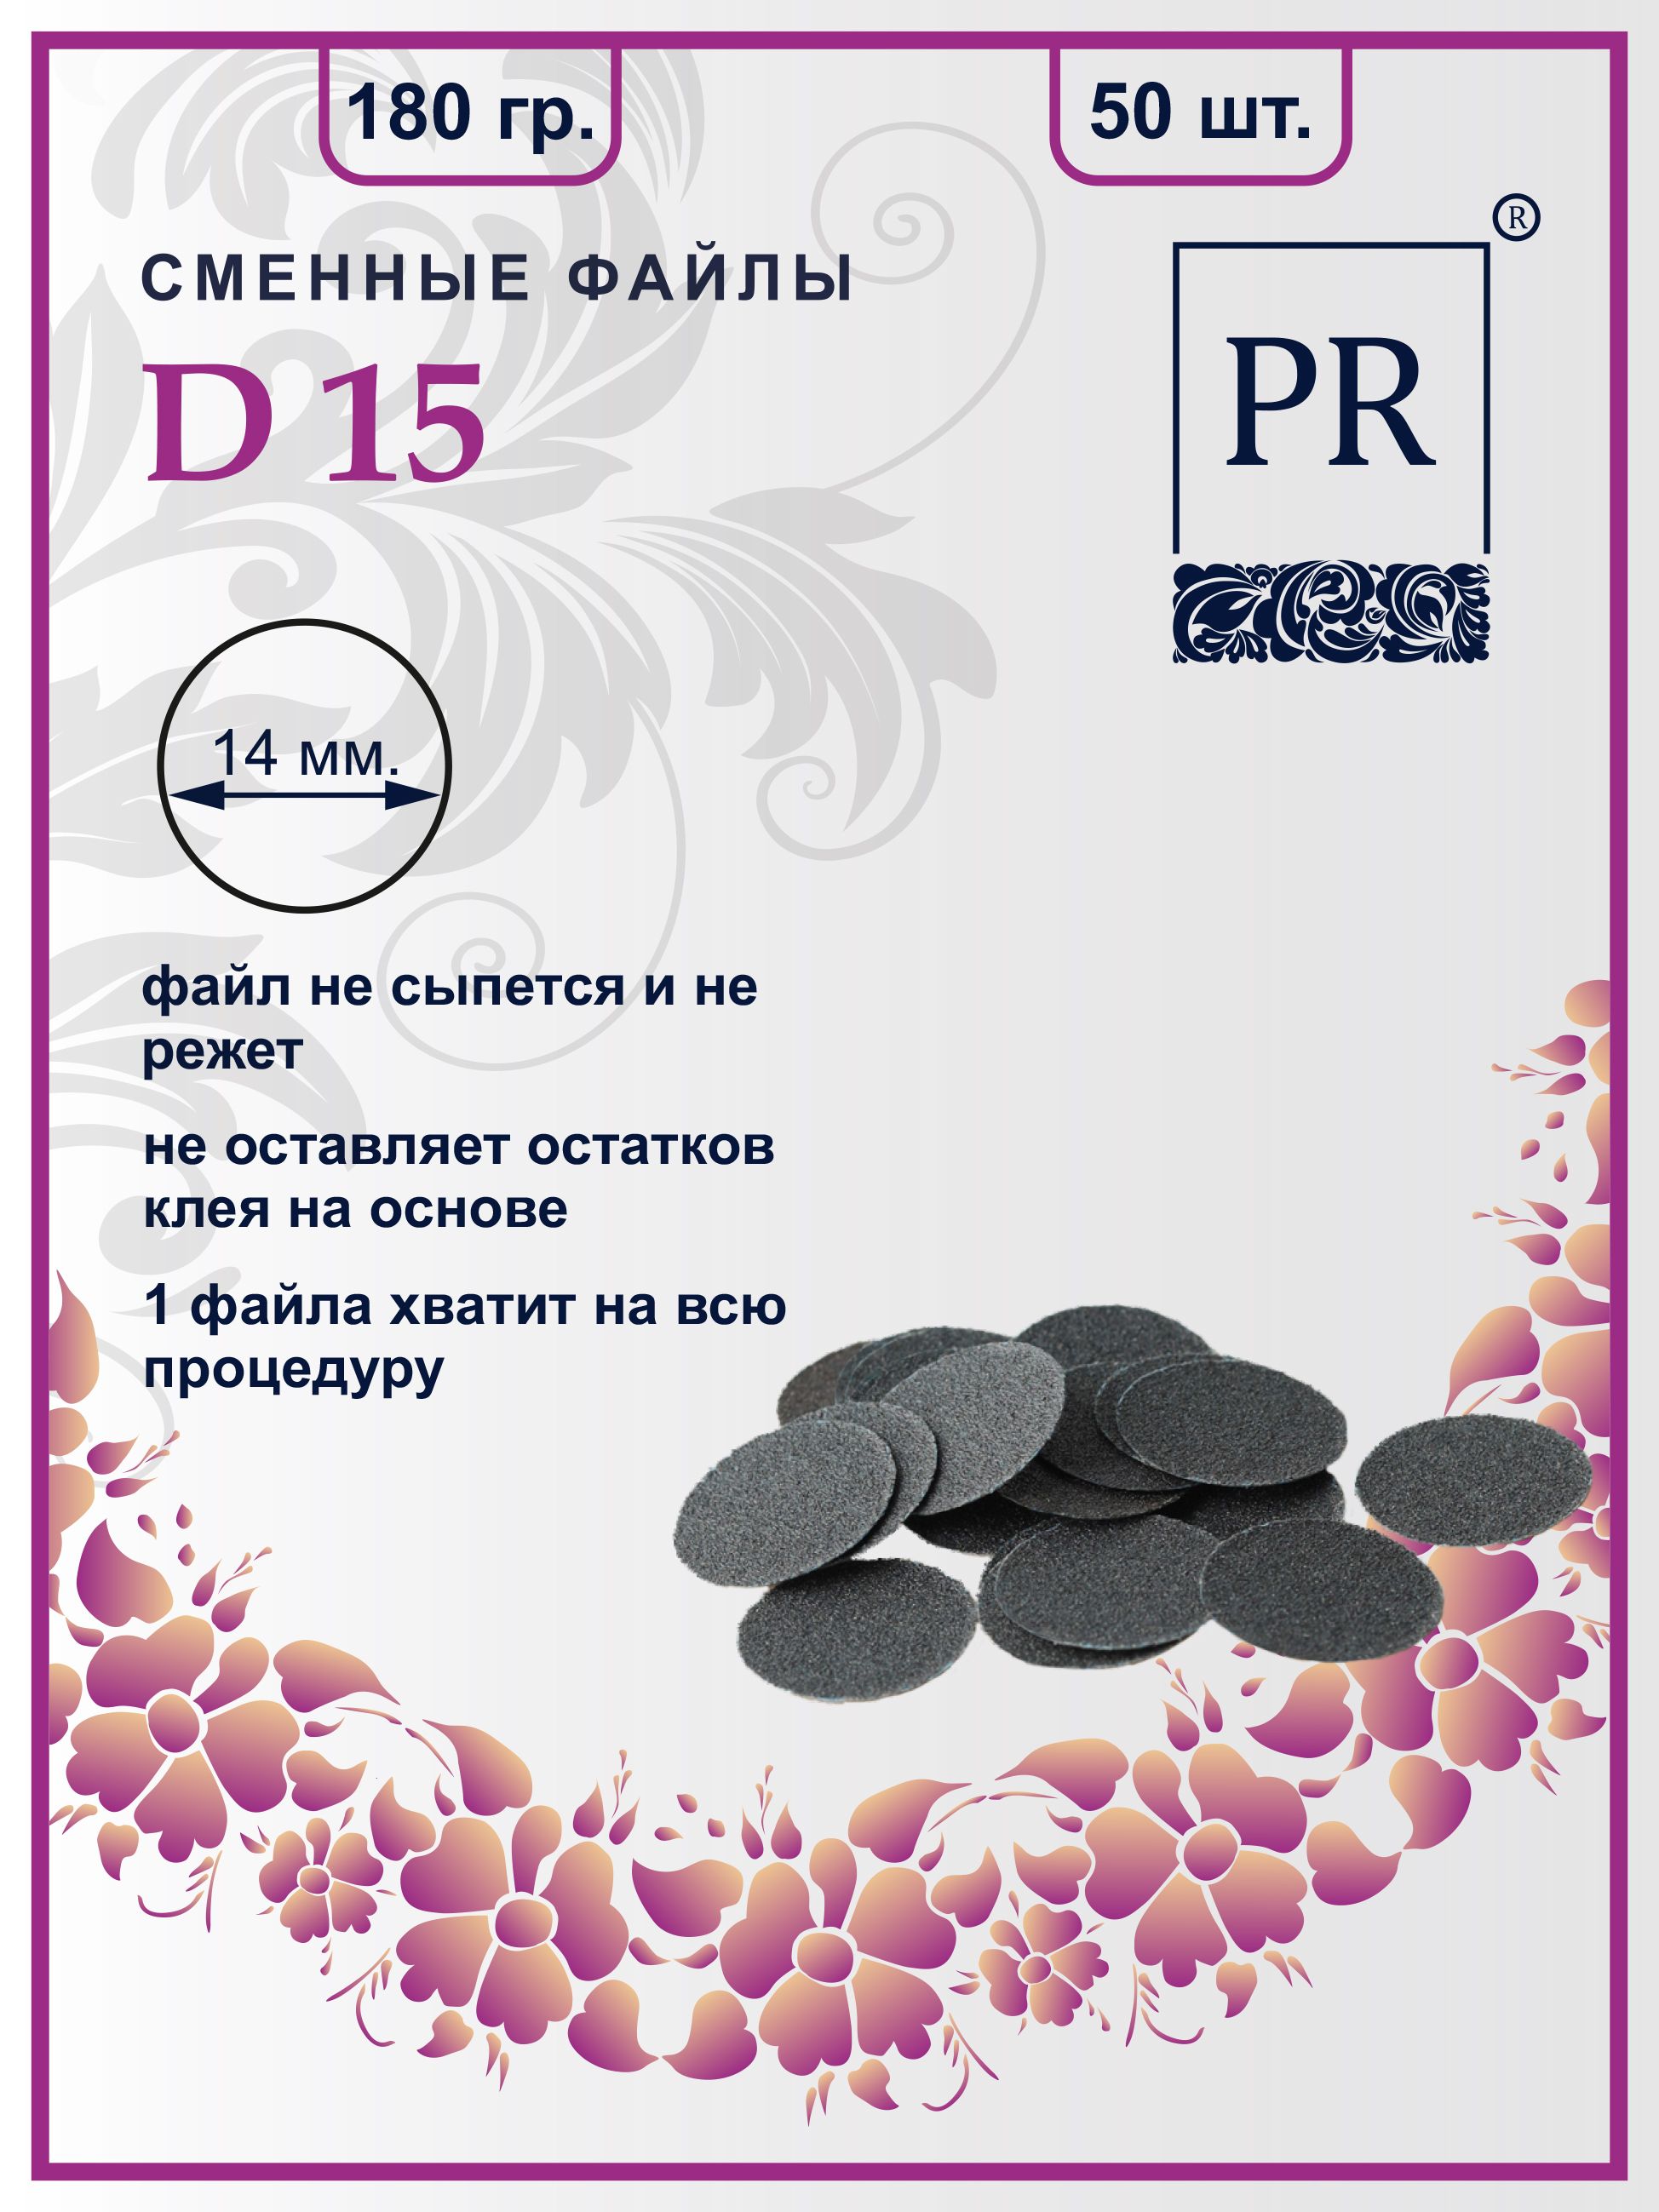 Сменные файлы Pilochki Russia диски для педикюра для диска S 180 грит 50 штук пакеты для собачьих экскрементов ferplast 2 рулона по 24 пакета в ассортименте